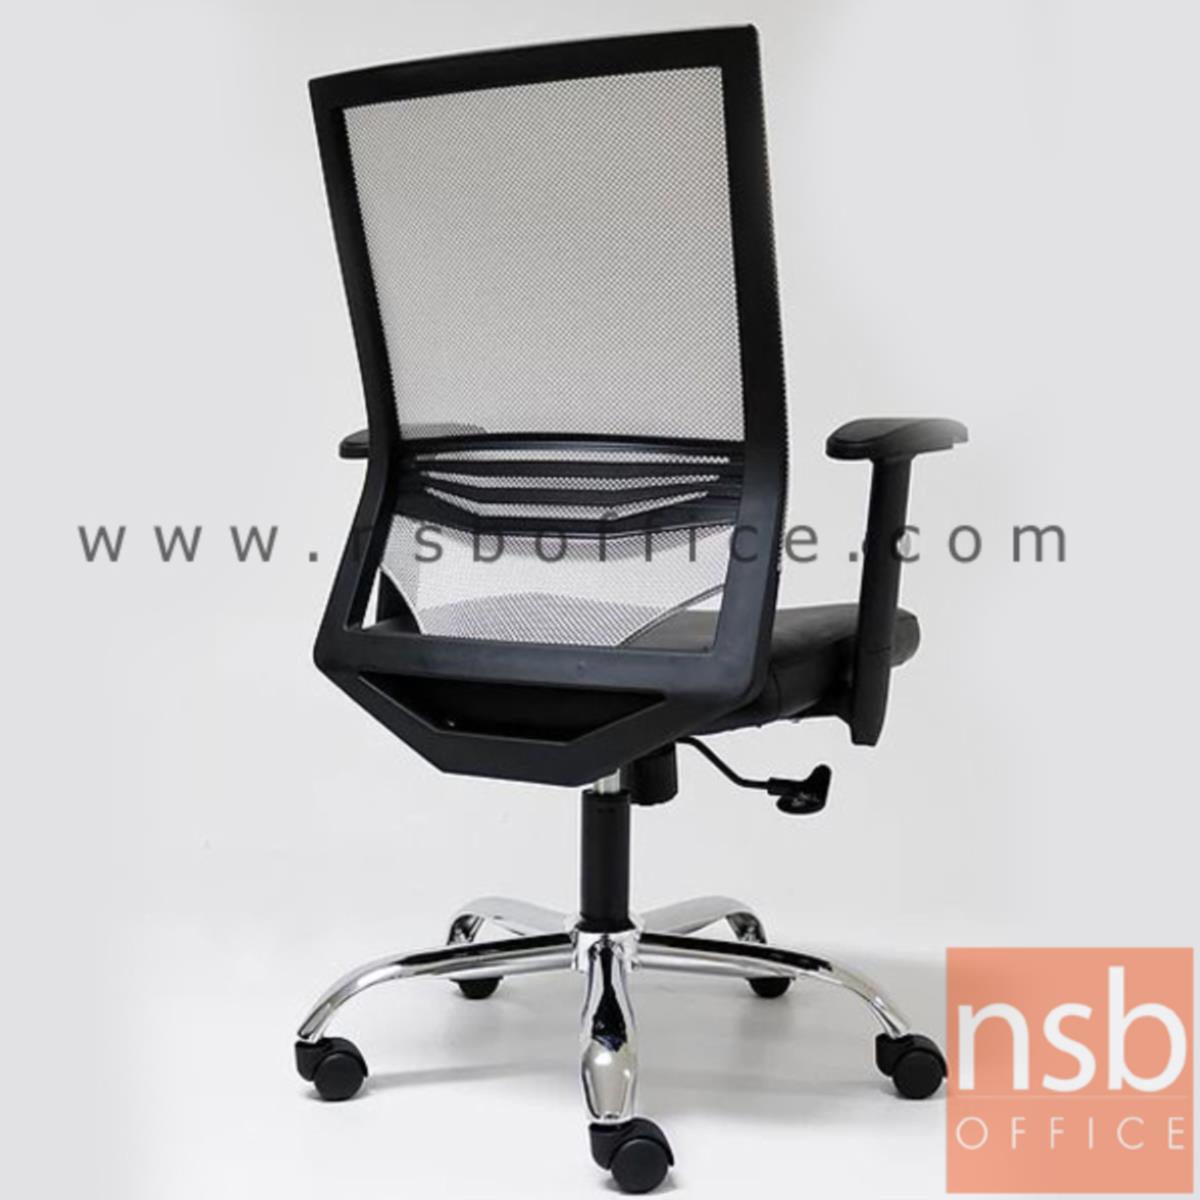 เก้าอี้สำนักงานหลังเน็ต รุ่น Rafael (ราฟาเอล) โช๊คแก๊ส มีก้อนโยก  มี lumbar support ที่นั่งหุ้มหนังเทียมสีดำ